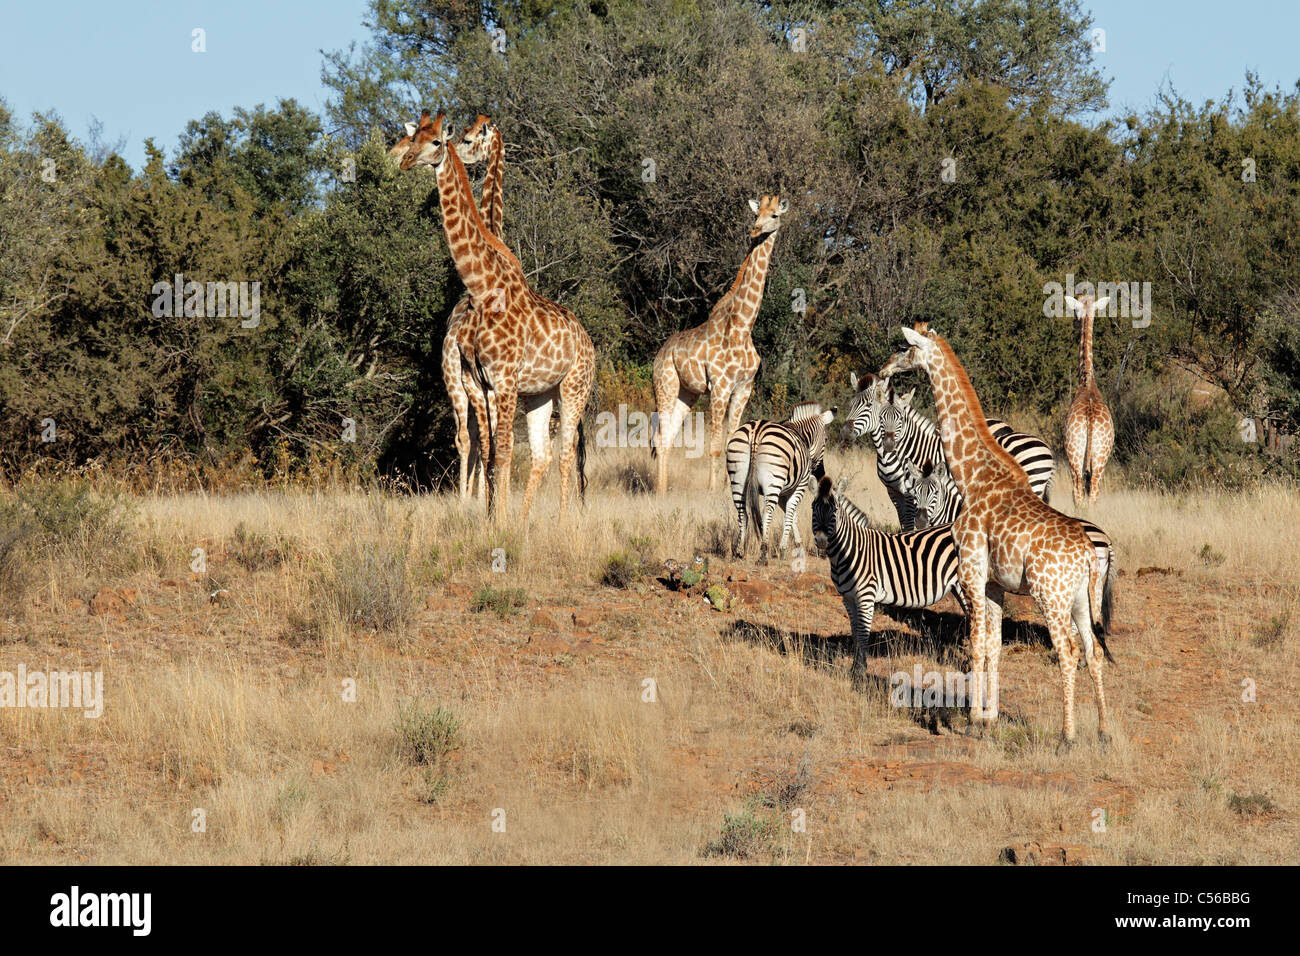 Group of giraffe (Giraffa camelopardalis) and Plains Zebras (Equus quagga), South Africa Stock Photo